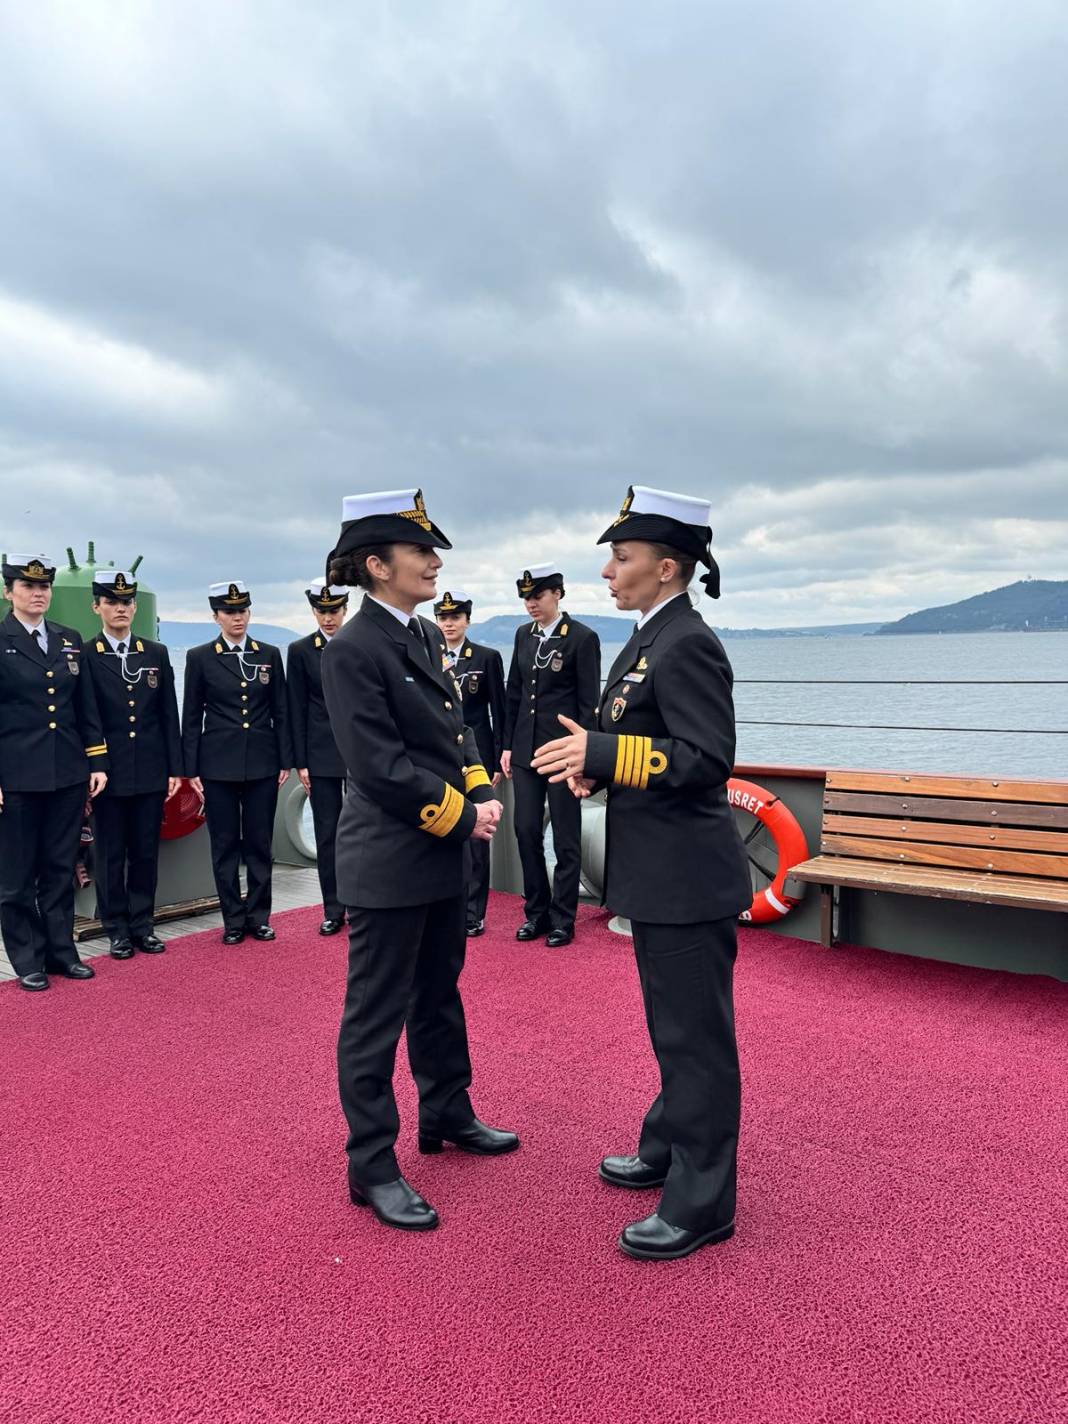 İlk kadın amirali Gökçen Fırat Deniz Harp Okulu öğrencileriyle TCG Nusret'te buluştu 24